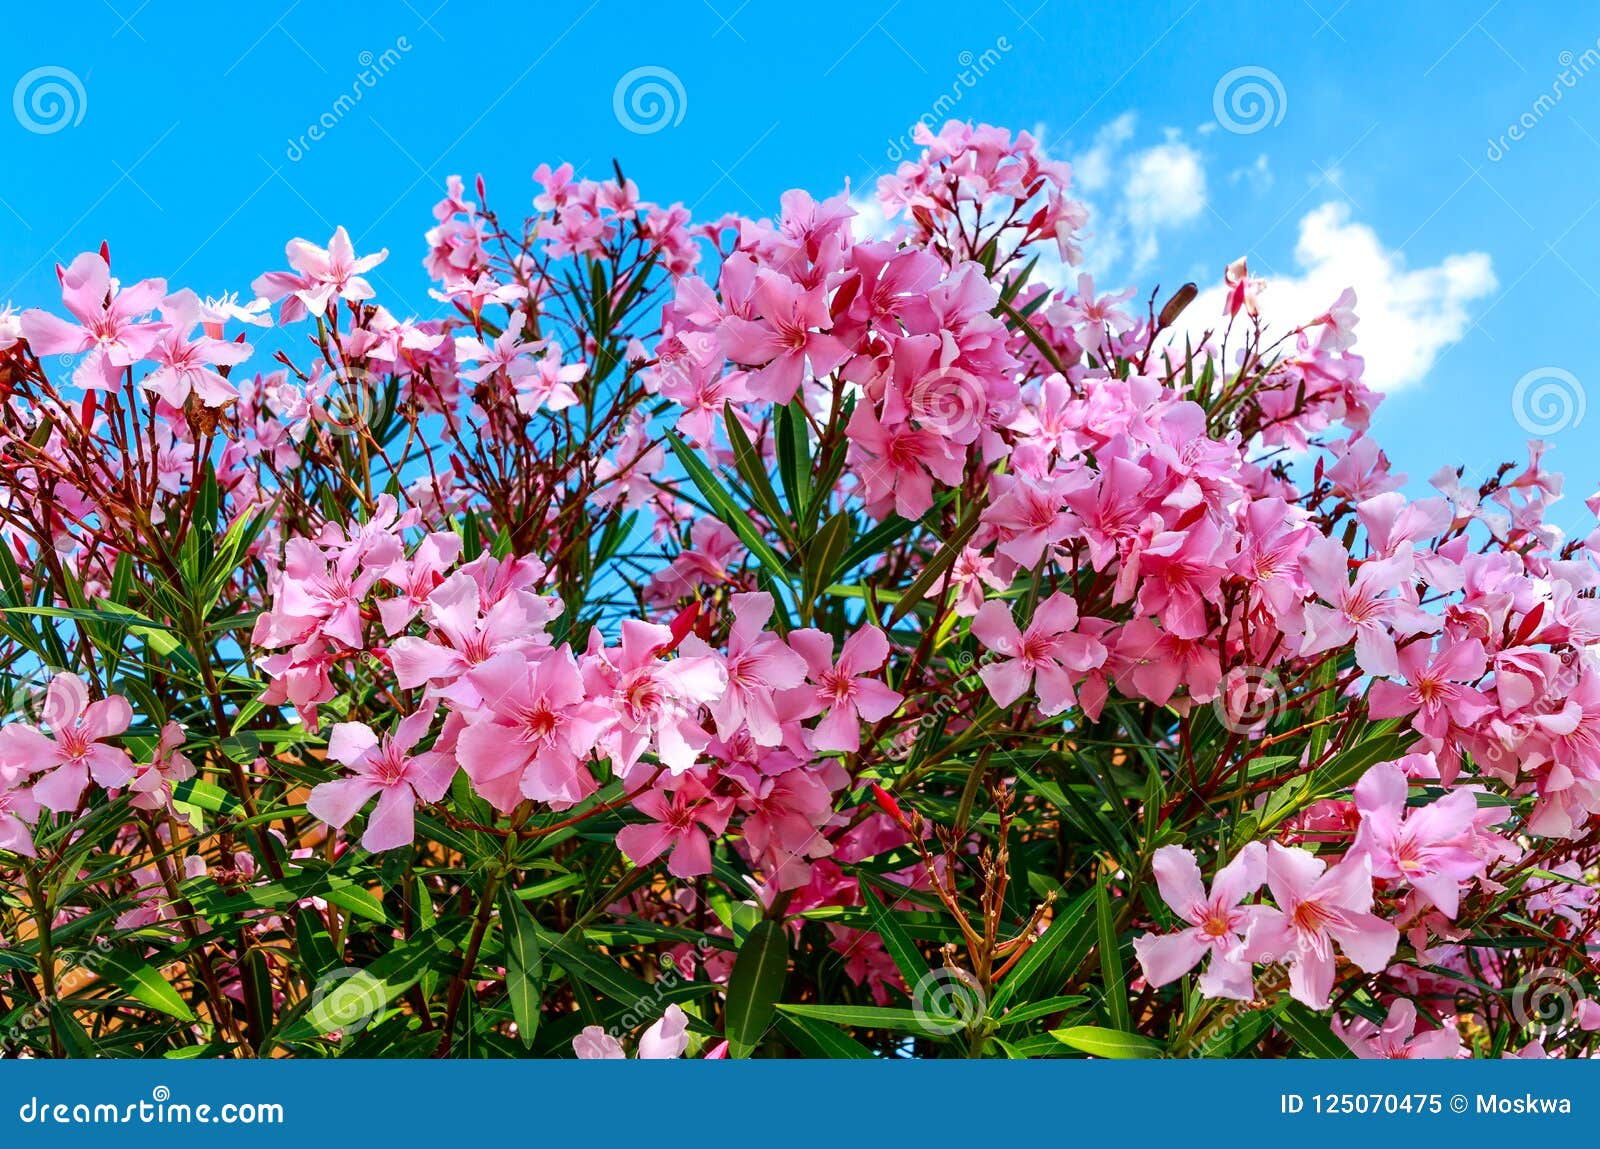 beautiful pink flowering oleander nerium oleander in full bloom